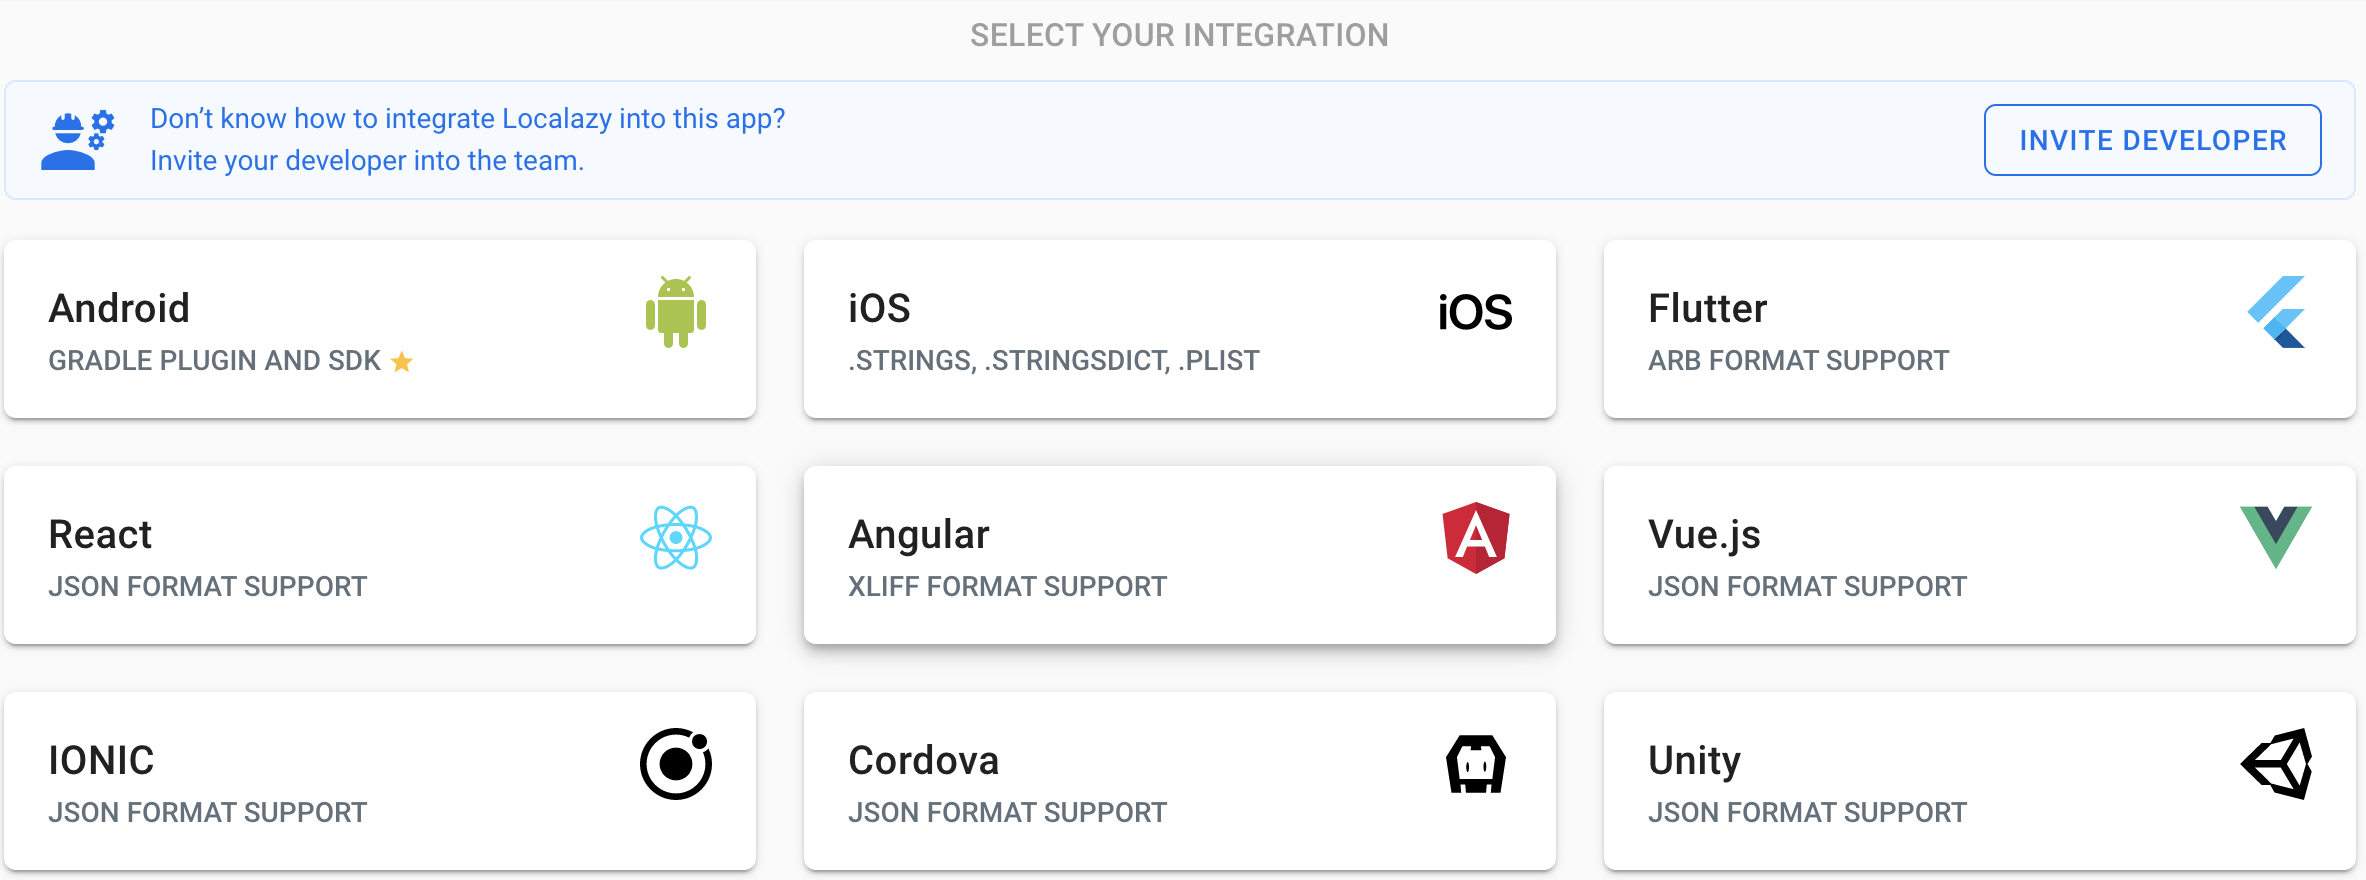 Select Angular integration